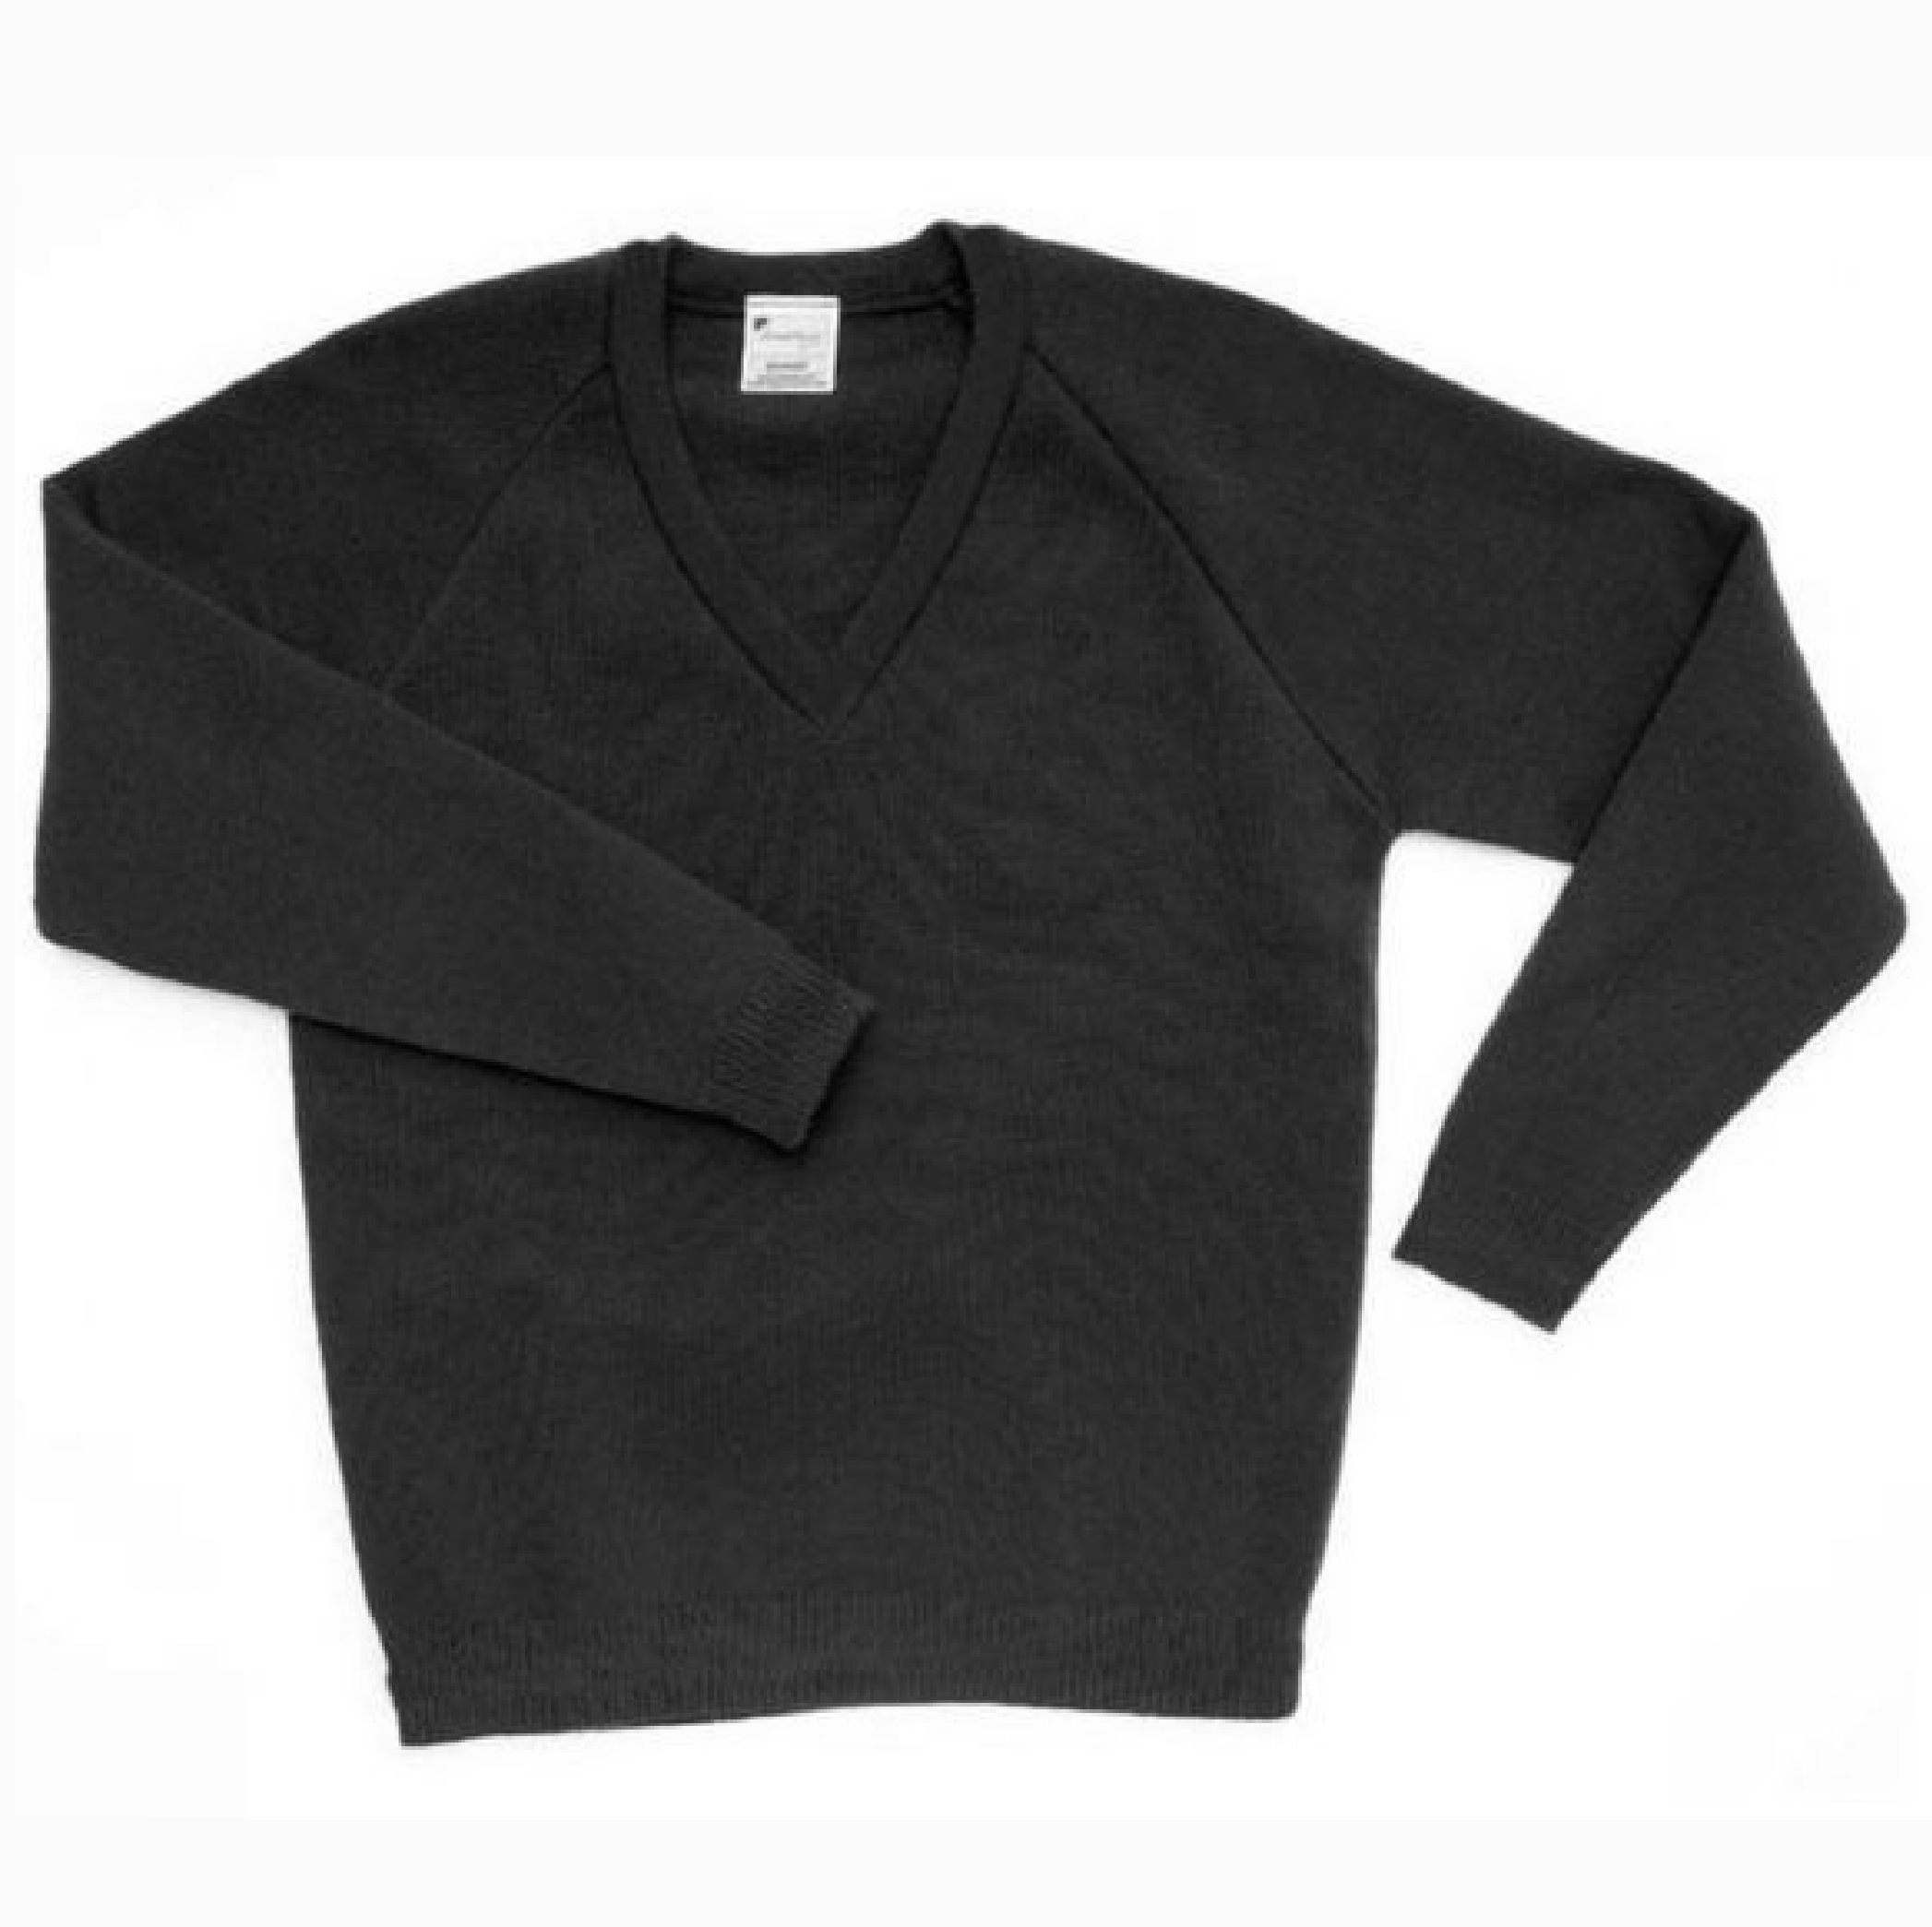 Plain Cotton Black Jumper (Knitwear) - Crested School Wear